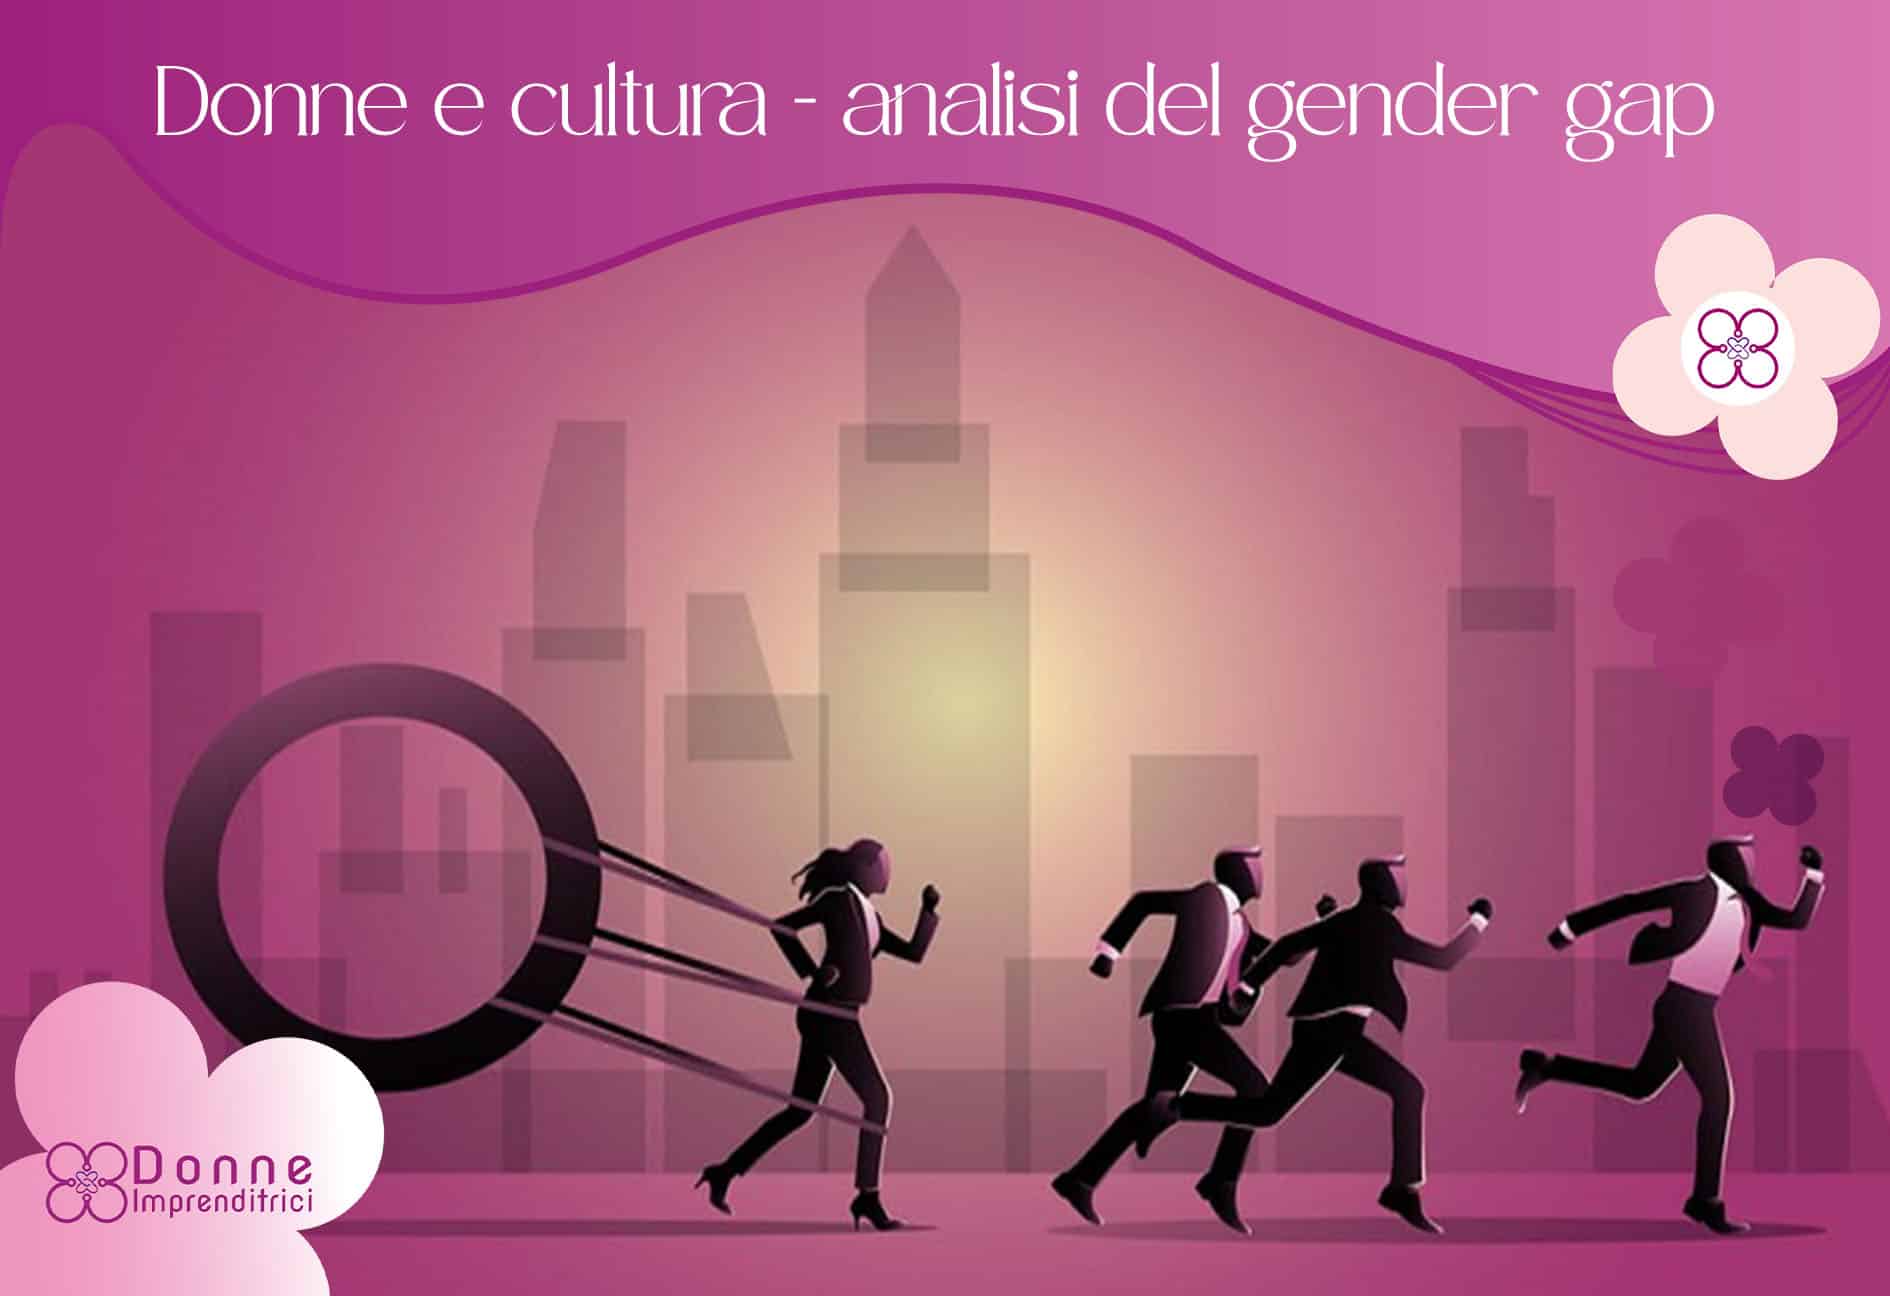 Donne_cultura_analisi_gender_gap_Donne_Imprenditrici